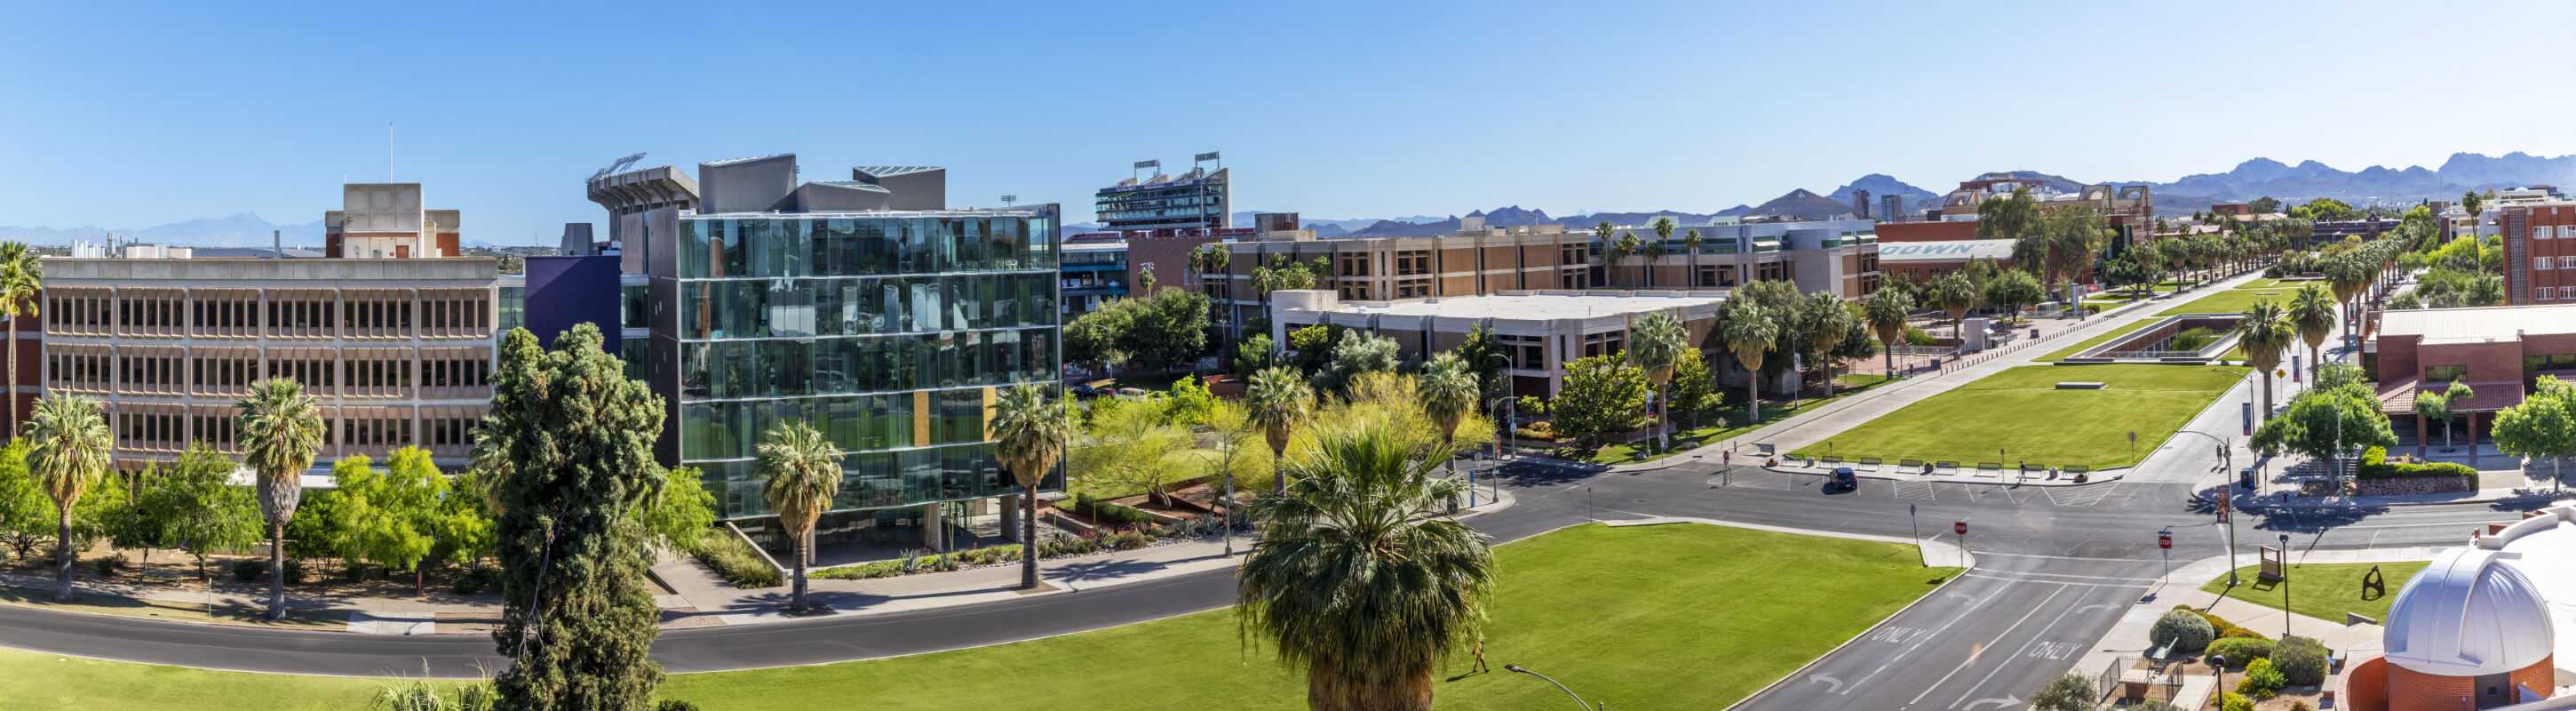 Panoramic view of the University of Arizona Mall